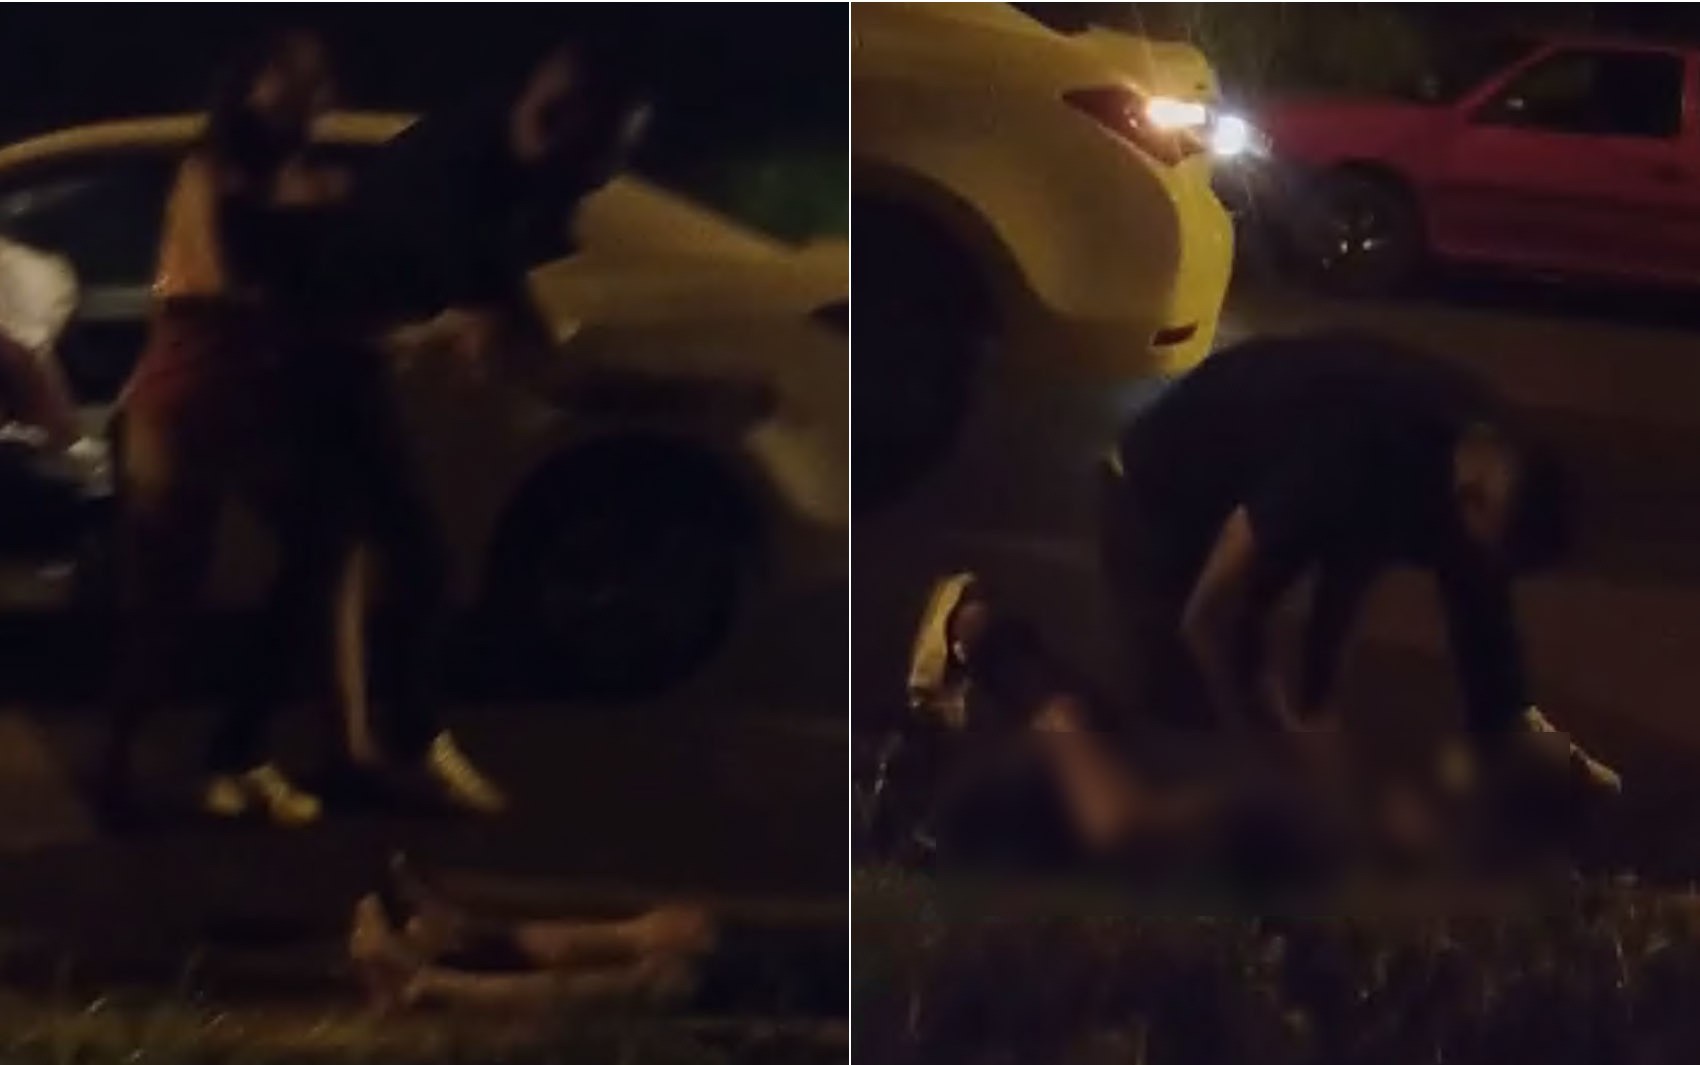 Vídeo mostra homem espancando motorista após acidente de trânsito em Pontal, SP; suspeito foi presoon março 27, 2023 at 11:50 am